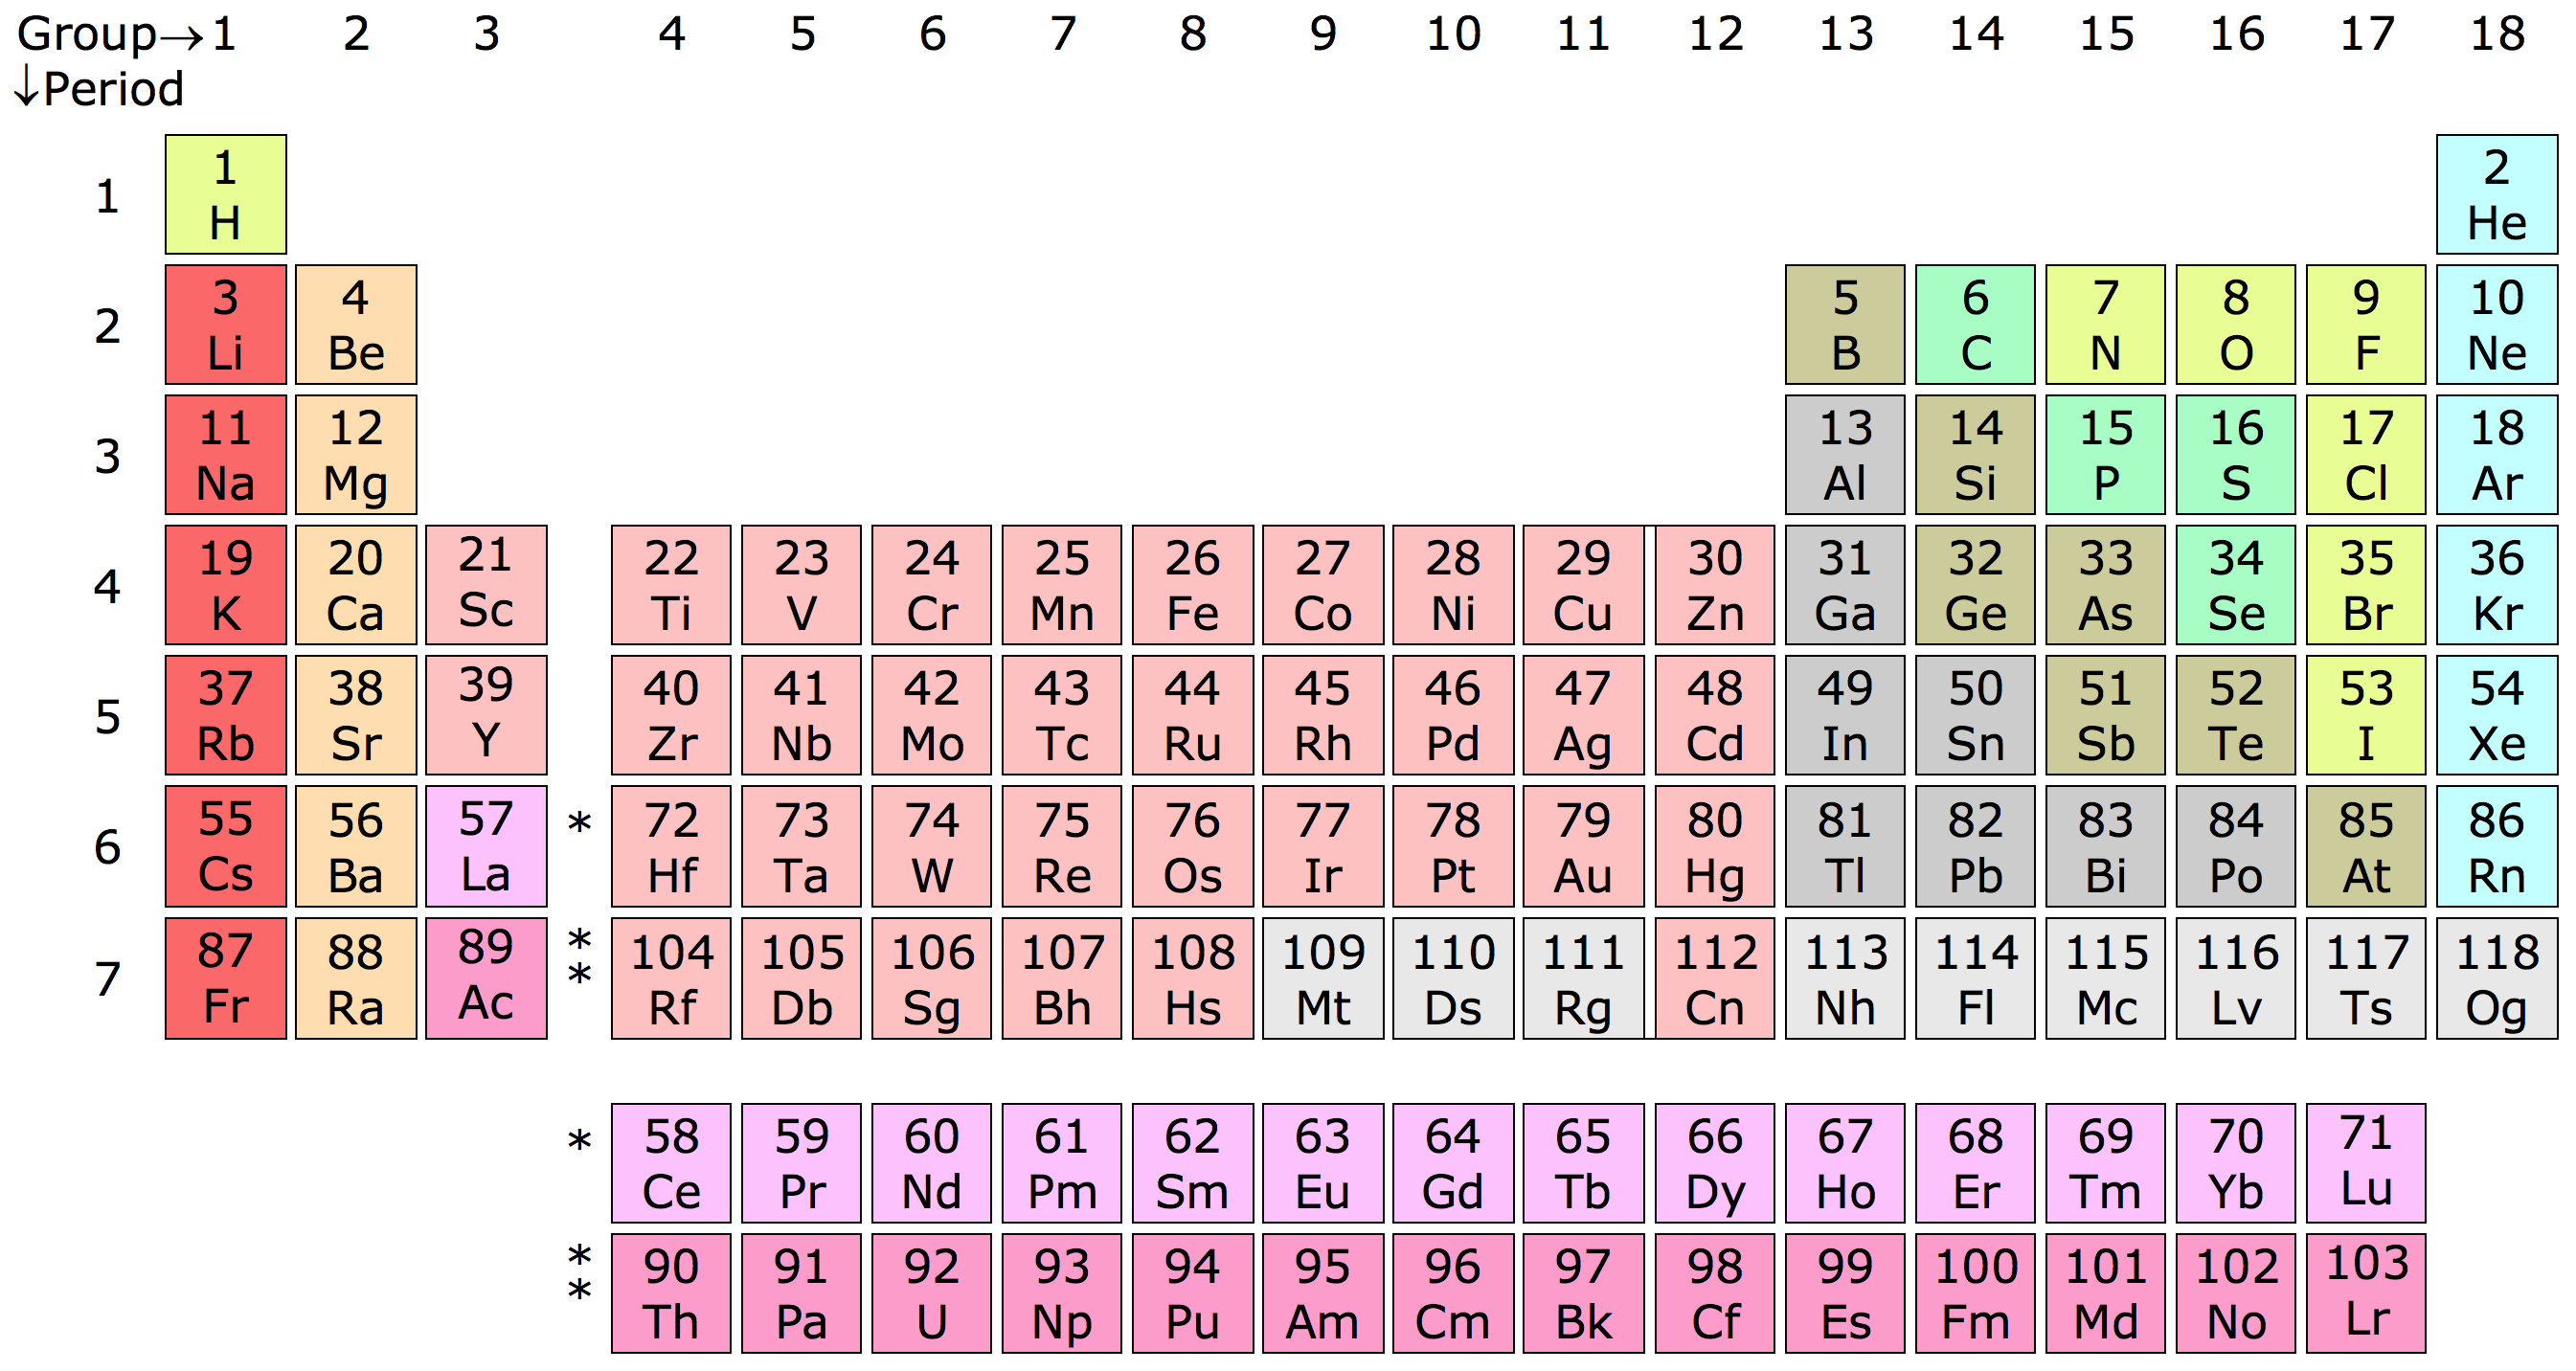 Tìm hiểu về 118 nguyên tố hóa học trong bảng tính tan chất 2023